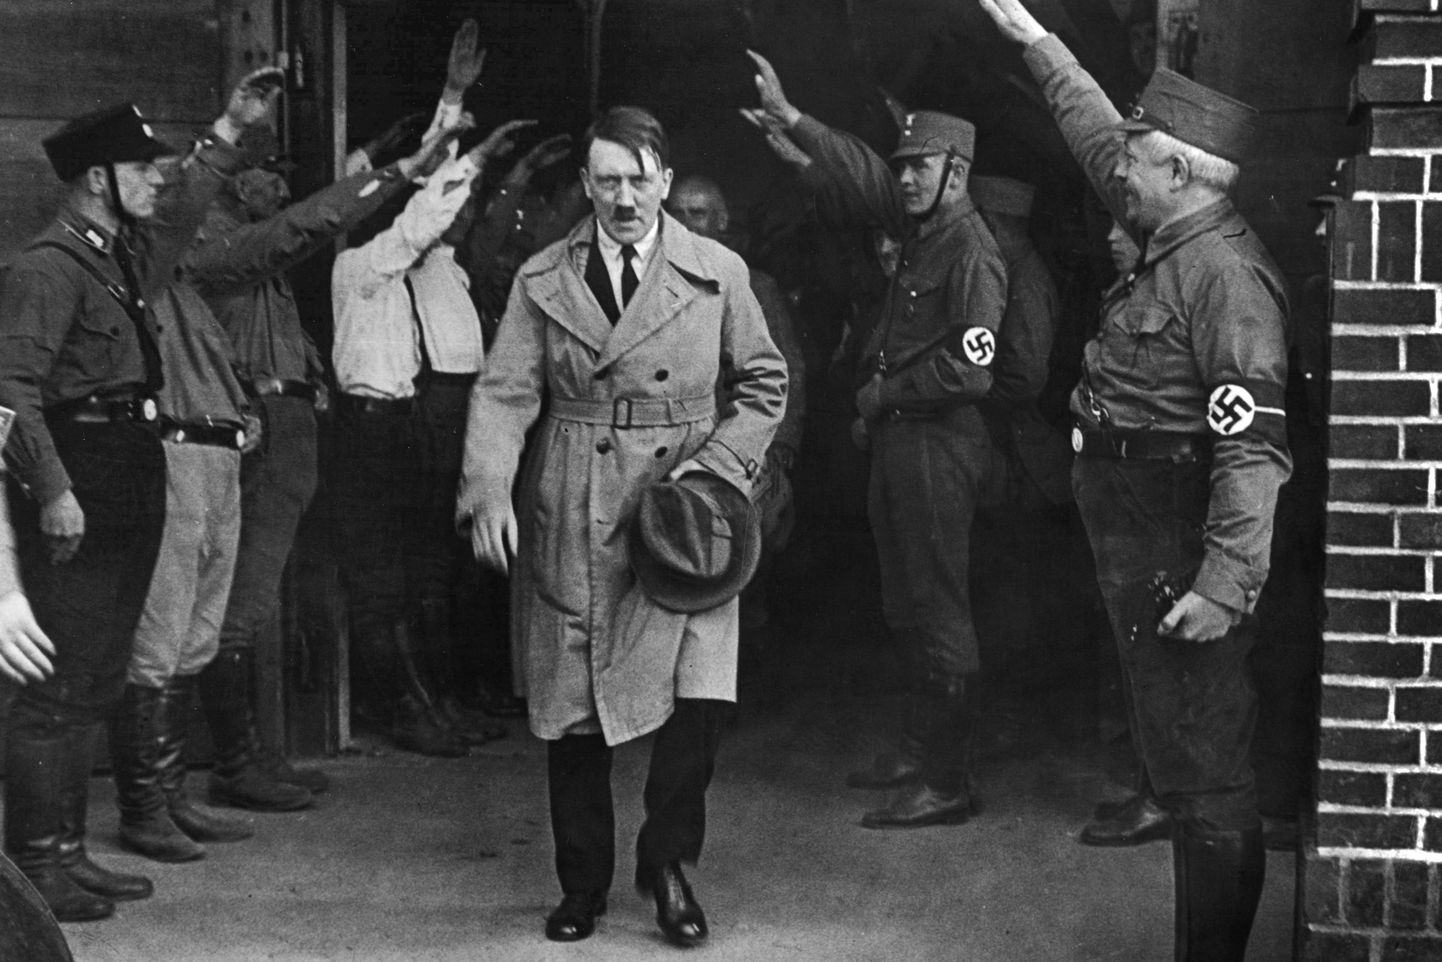 Saksa natsionaalsotsialistliku partei liider 5. detsembril 1931 tehtud fotol lahkumas Münchenis partei peakorterist. Temast sai Saksamaa kantsler 1933. aastal ja 1934. aastast valitses ta diktaatorina